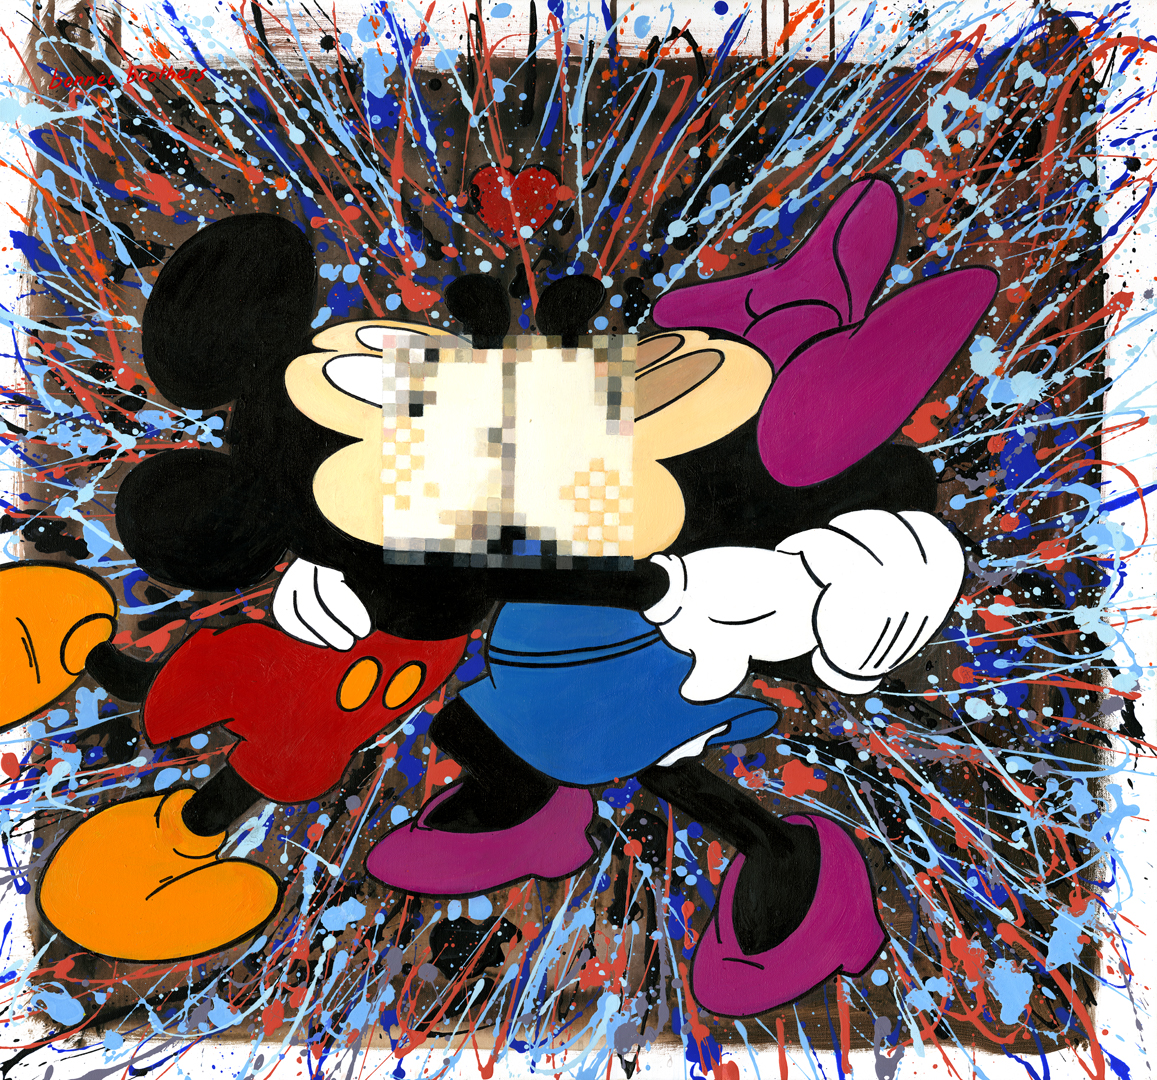 Magnifique Peinture des artistes français Les frères BONNEC Technique Mixte sur Toile Mickey 80*80 cm Explosion de couleurs Mickey Mouse Minnie Walt Dinsey Jackson Pollock JoneOne à découvrir à la Galerie Maner de Pont-Aven en Bretagne